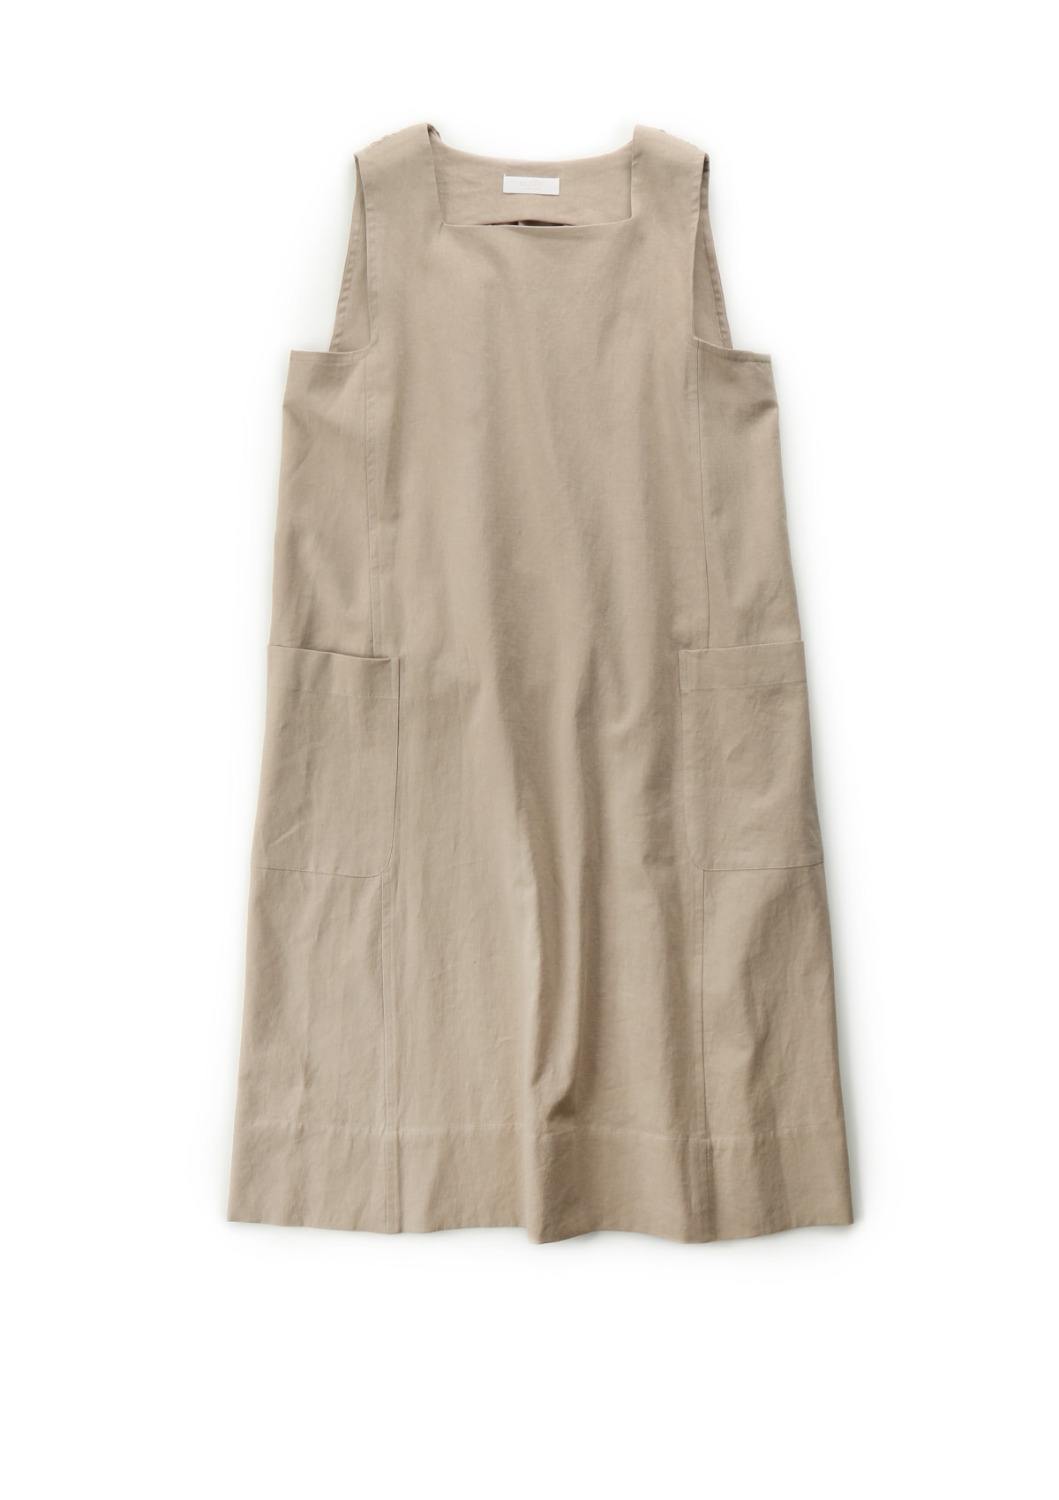 Baiser A-Line Dress - French Natural Linen Cotton